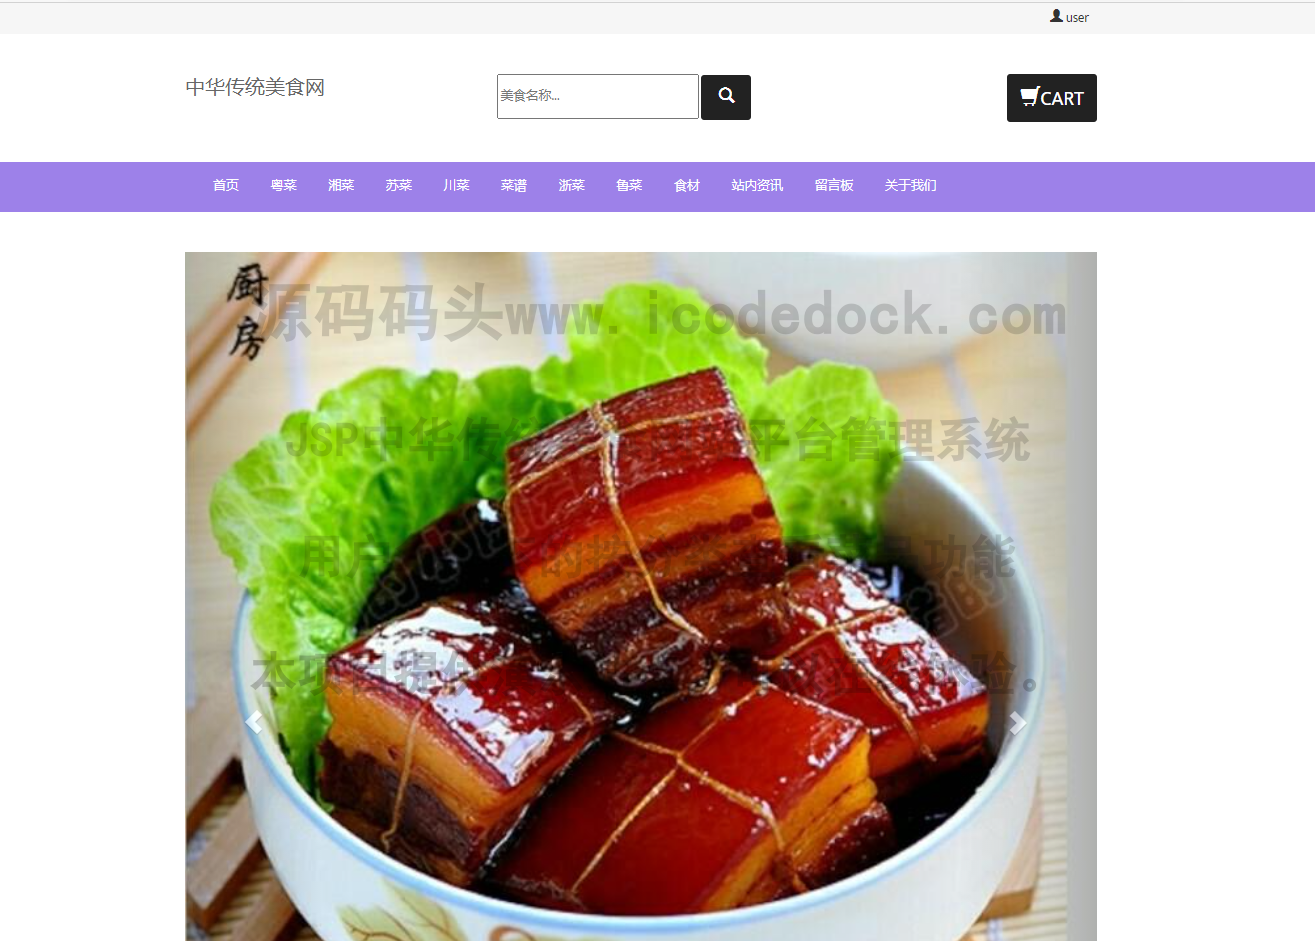 源码码头-JSP中华传统美食网站平台管理系统-用户角色-按分类查看菜品